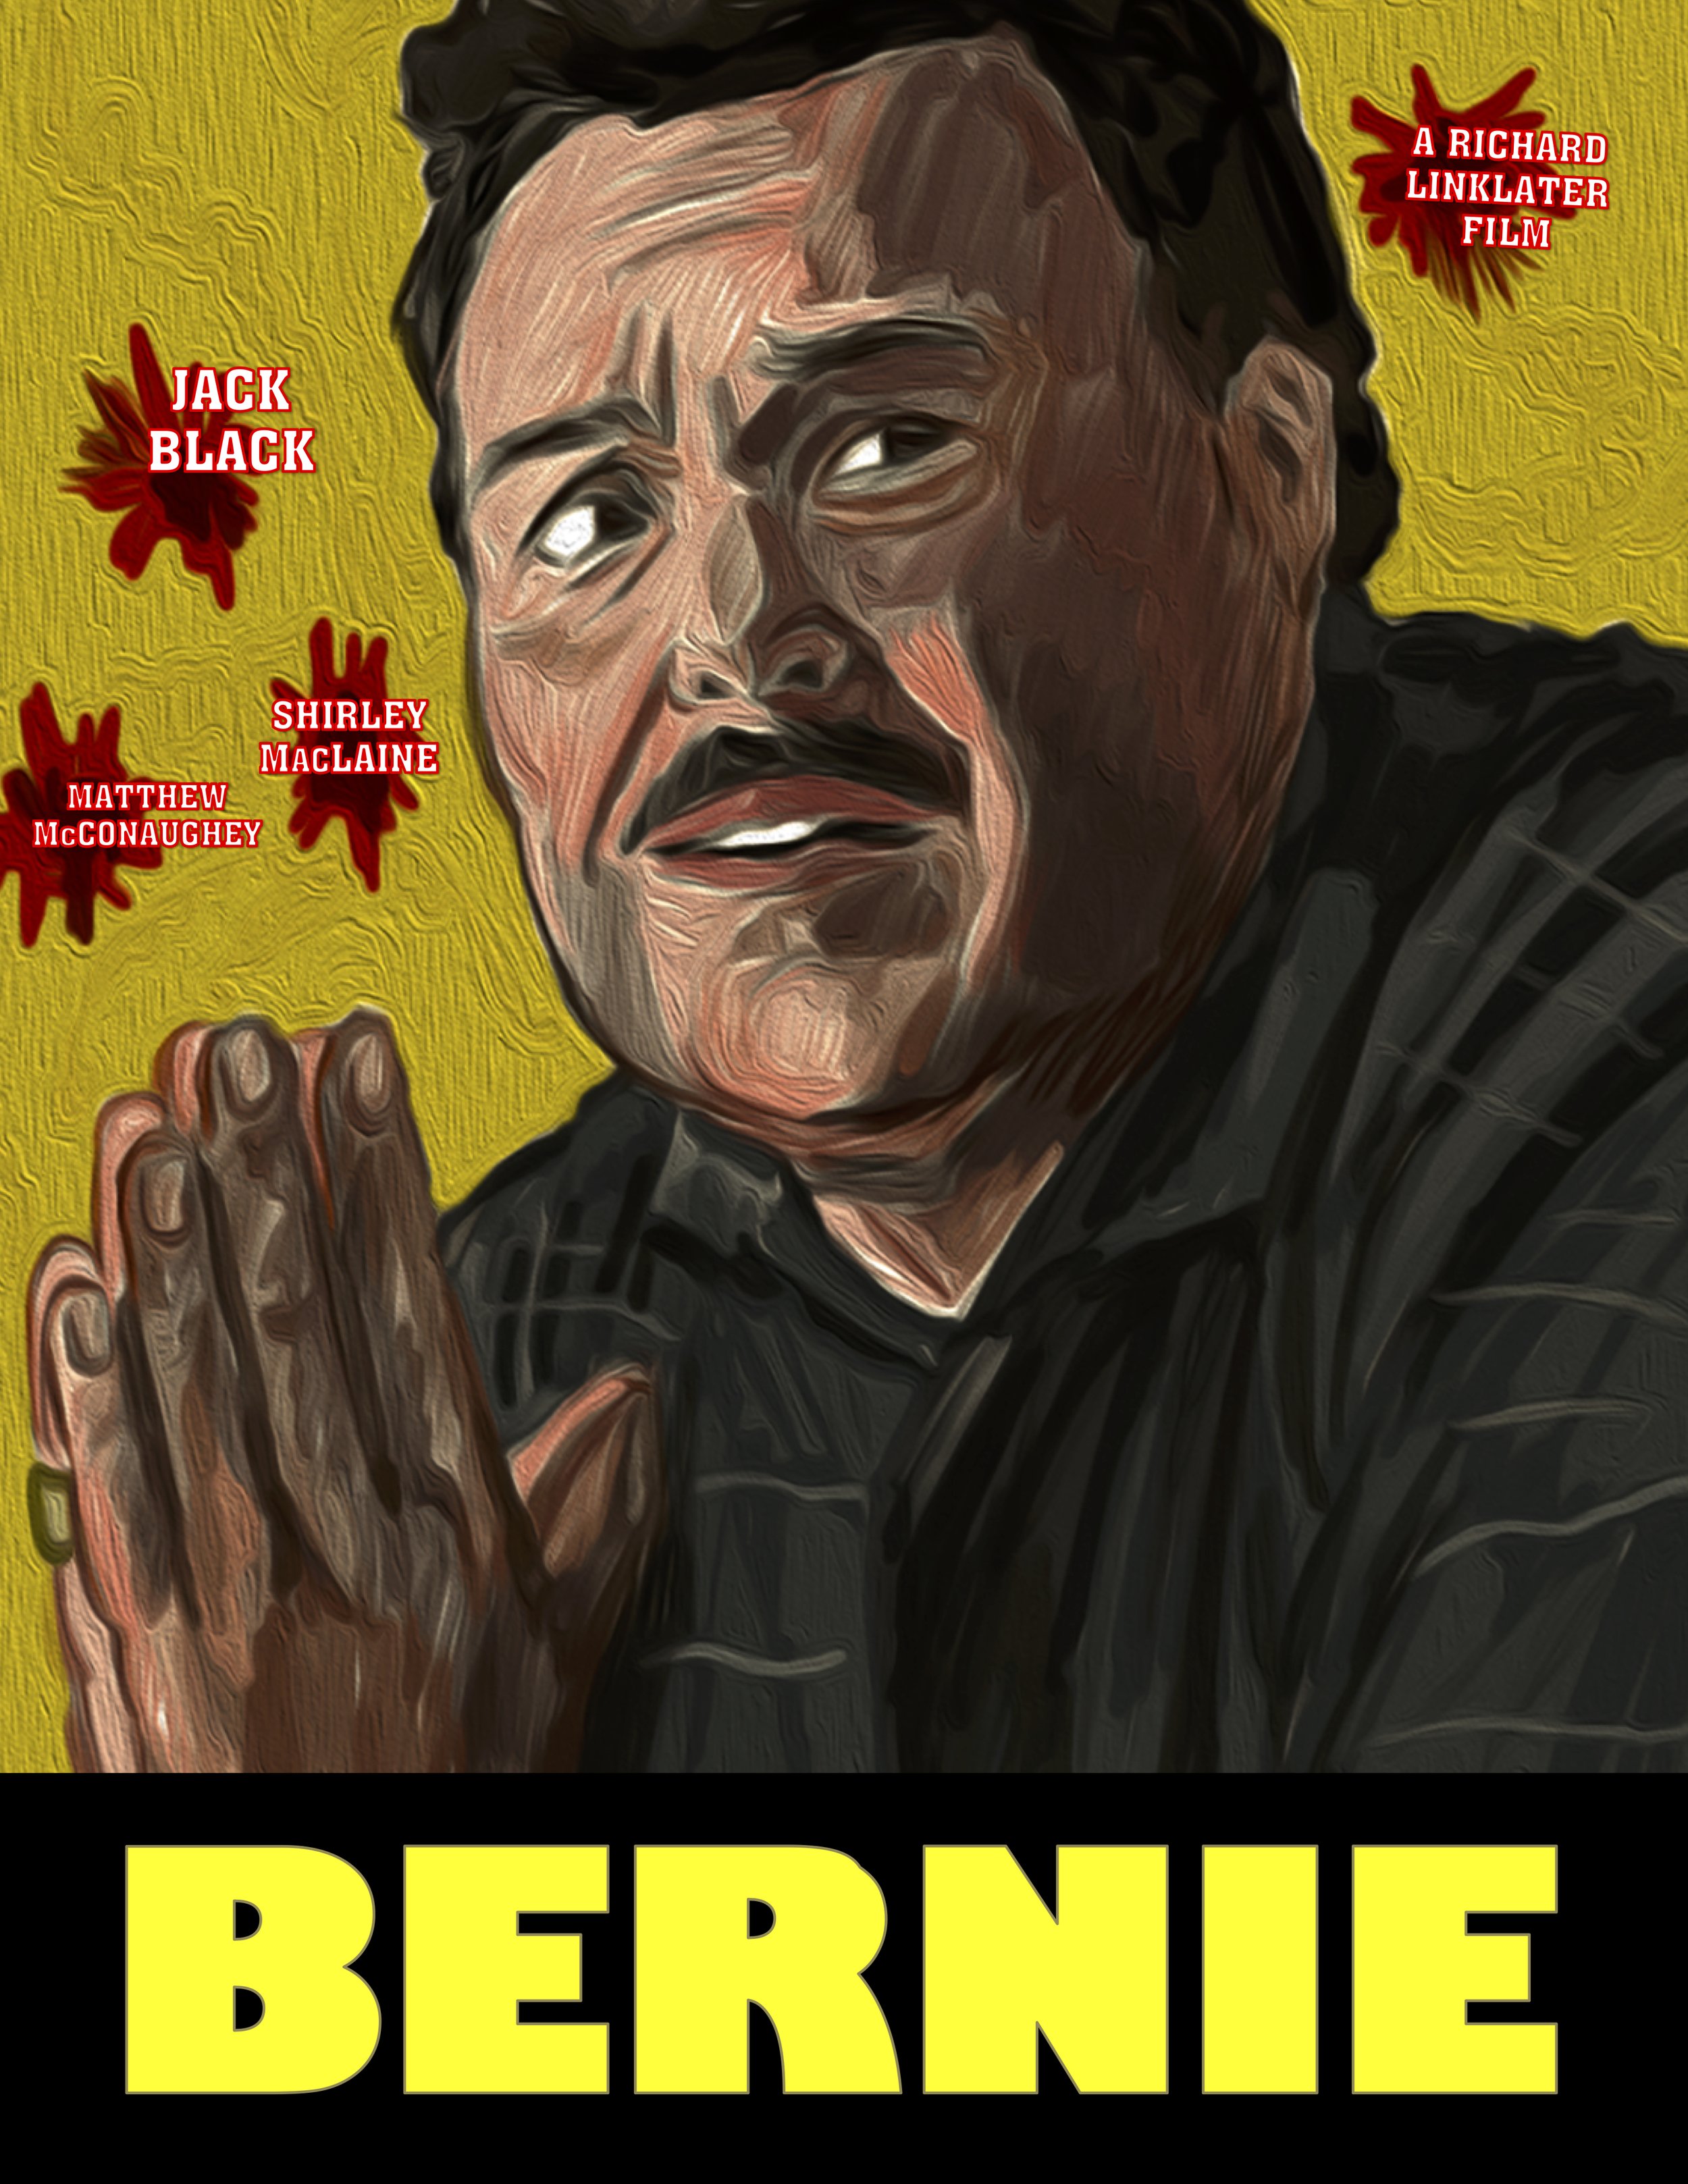 Bernie (2011)